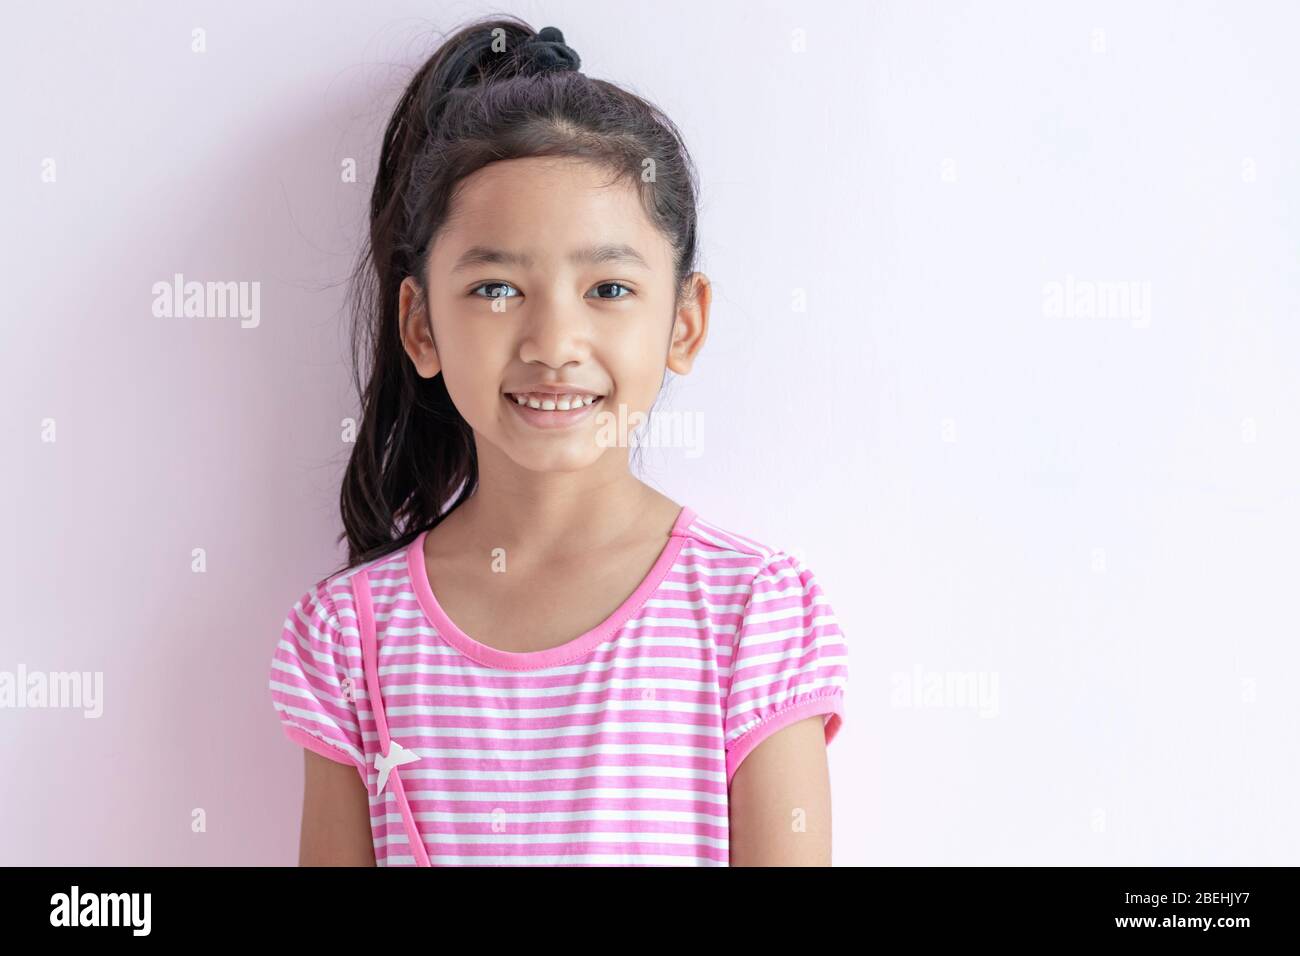 Porträt eines kleinen asiatischen Mädchens mit einem rosa-weiß gestreiften Kleid. Das Kind mit schwarzen Haaren lächelt hell. Stockfoto